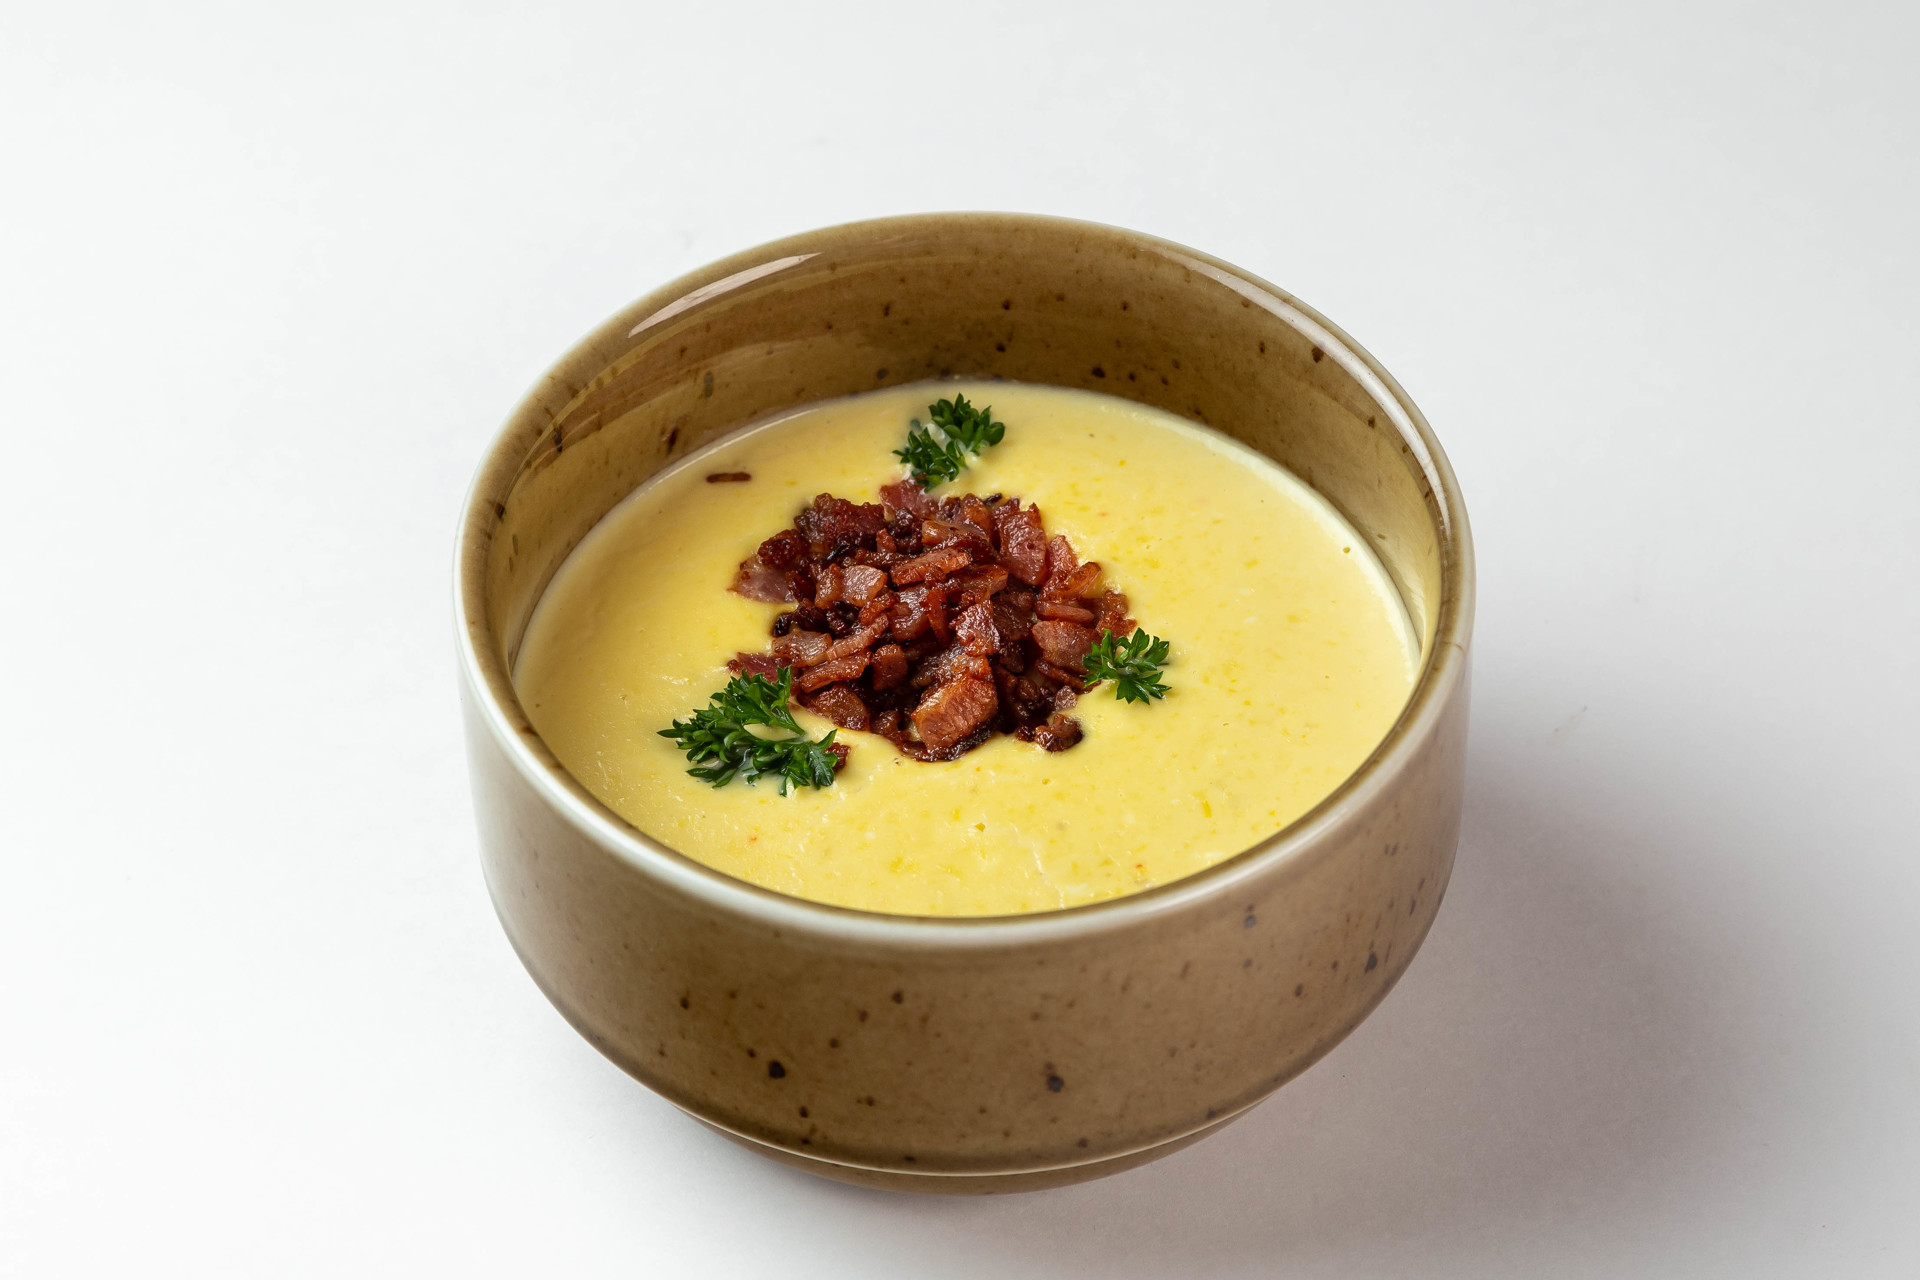 Кукурузный суп с сыром и беконом в "Texas", РК "Дискавери"